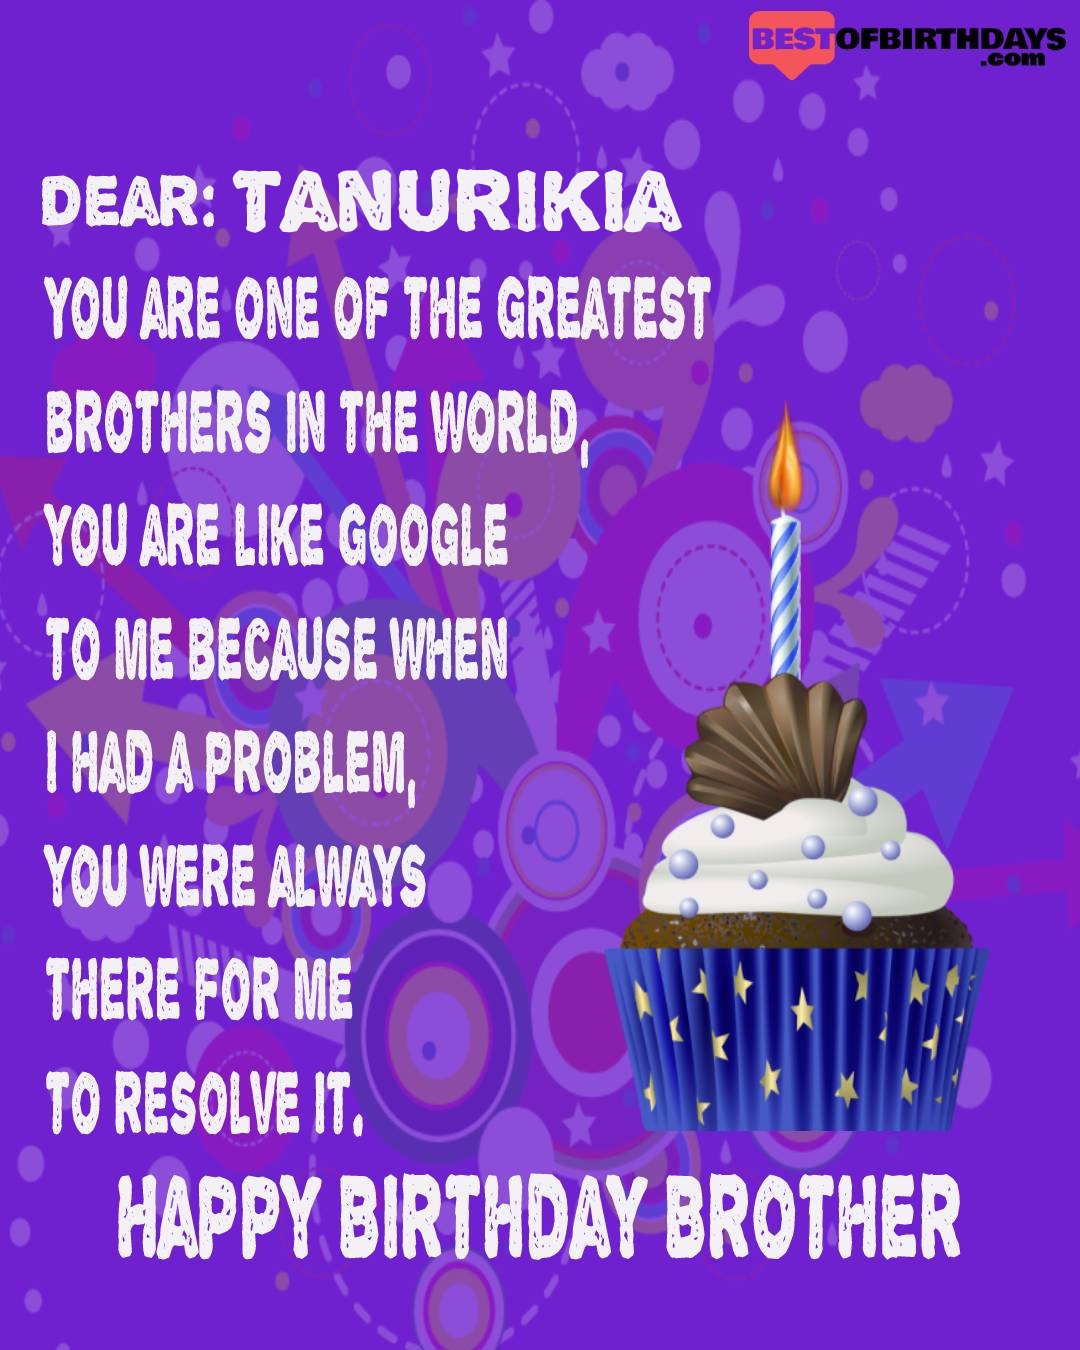 Happy birthday tanurikia bhai brother bro